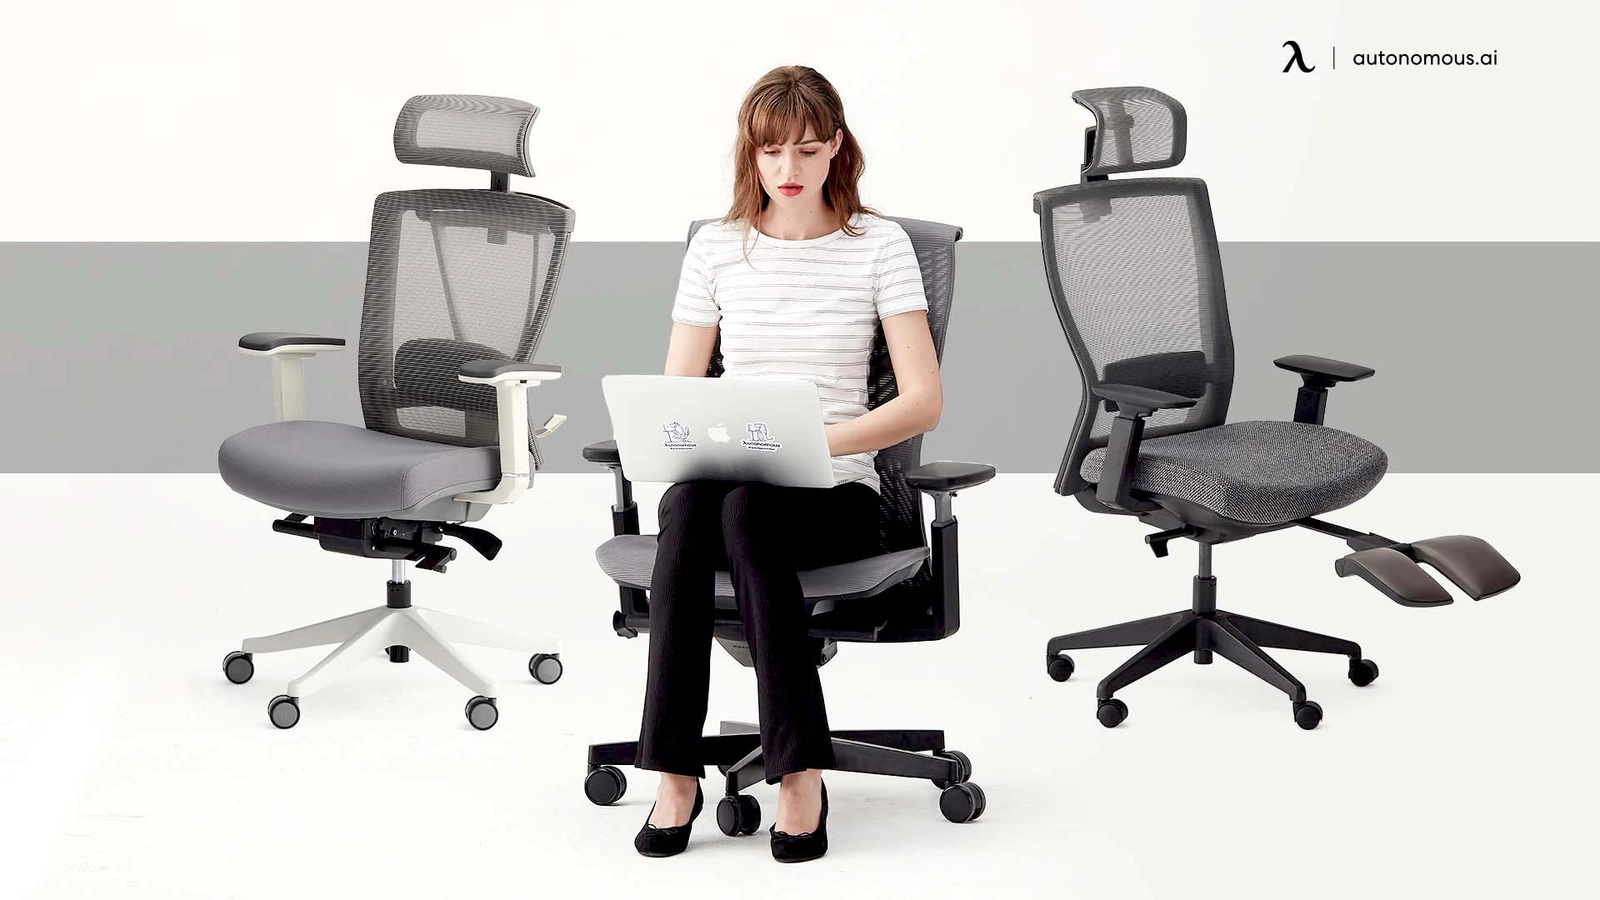 Autonomous Ergonomic Chair Sale - Best Office Chair Deal